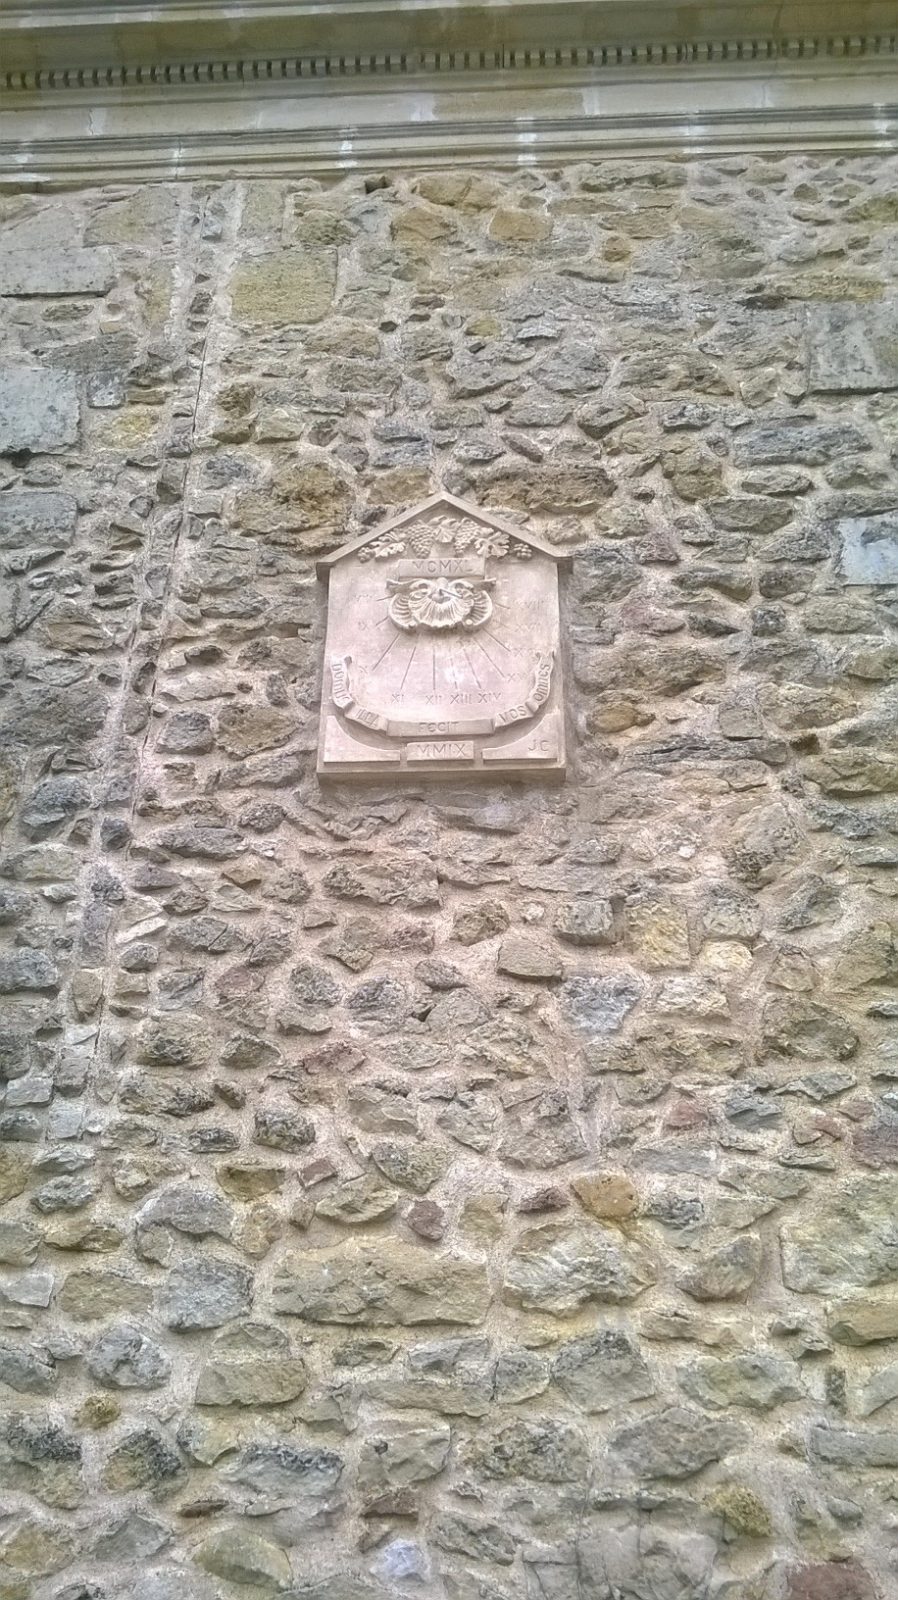 Destino Garona, Castillo de Broustaret, Rions